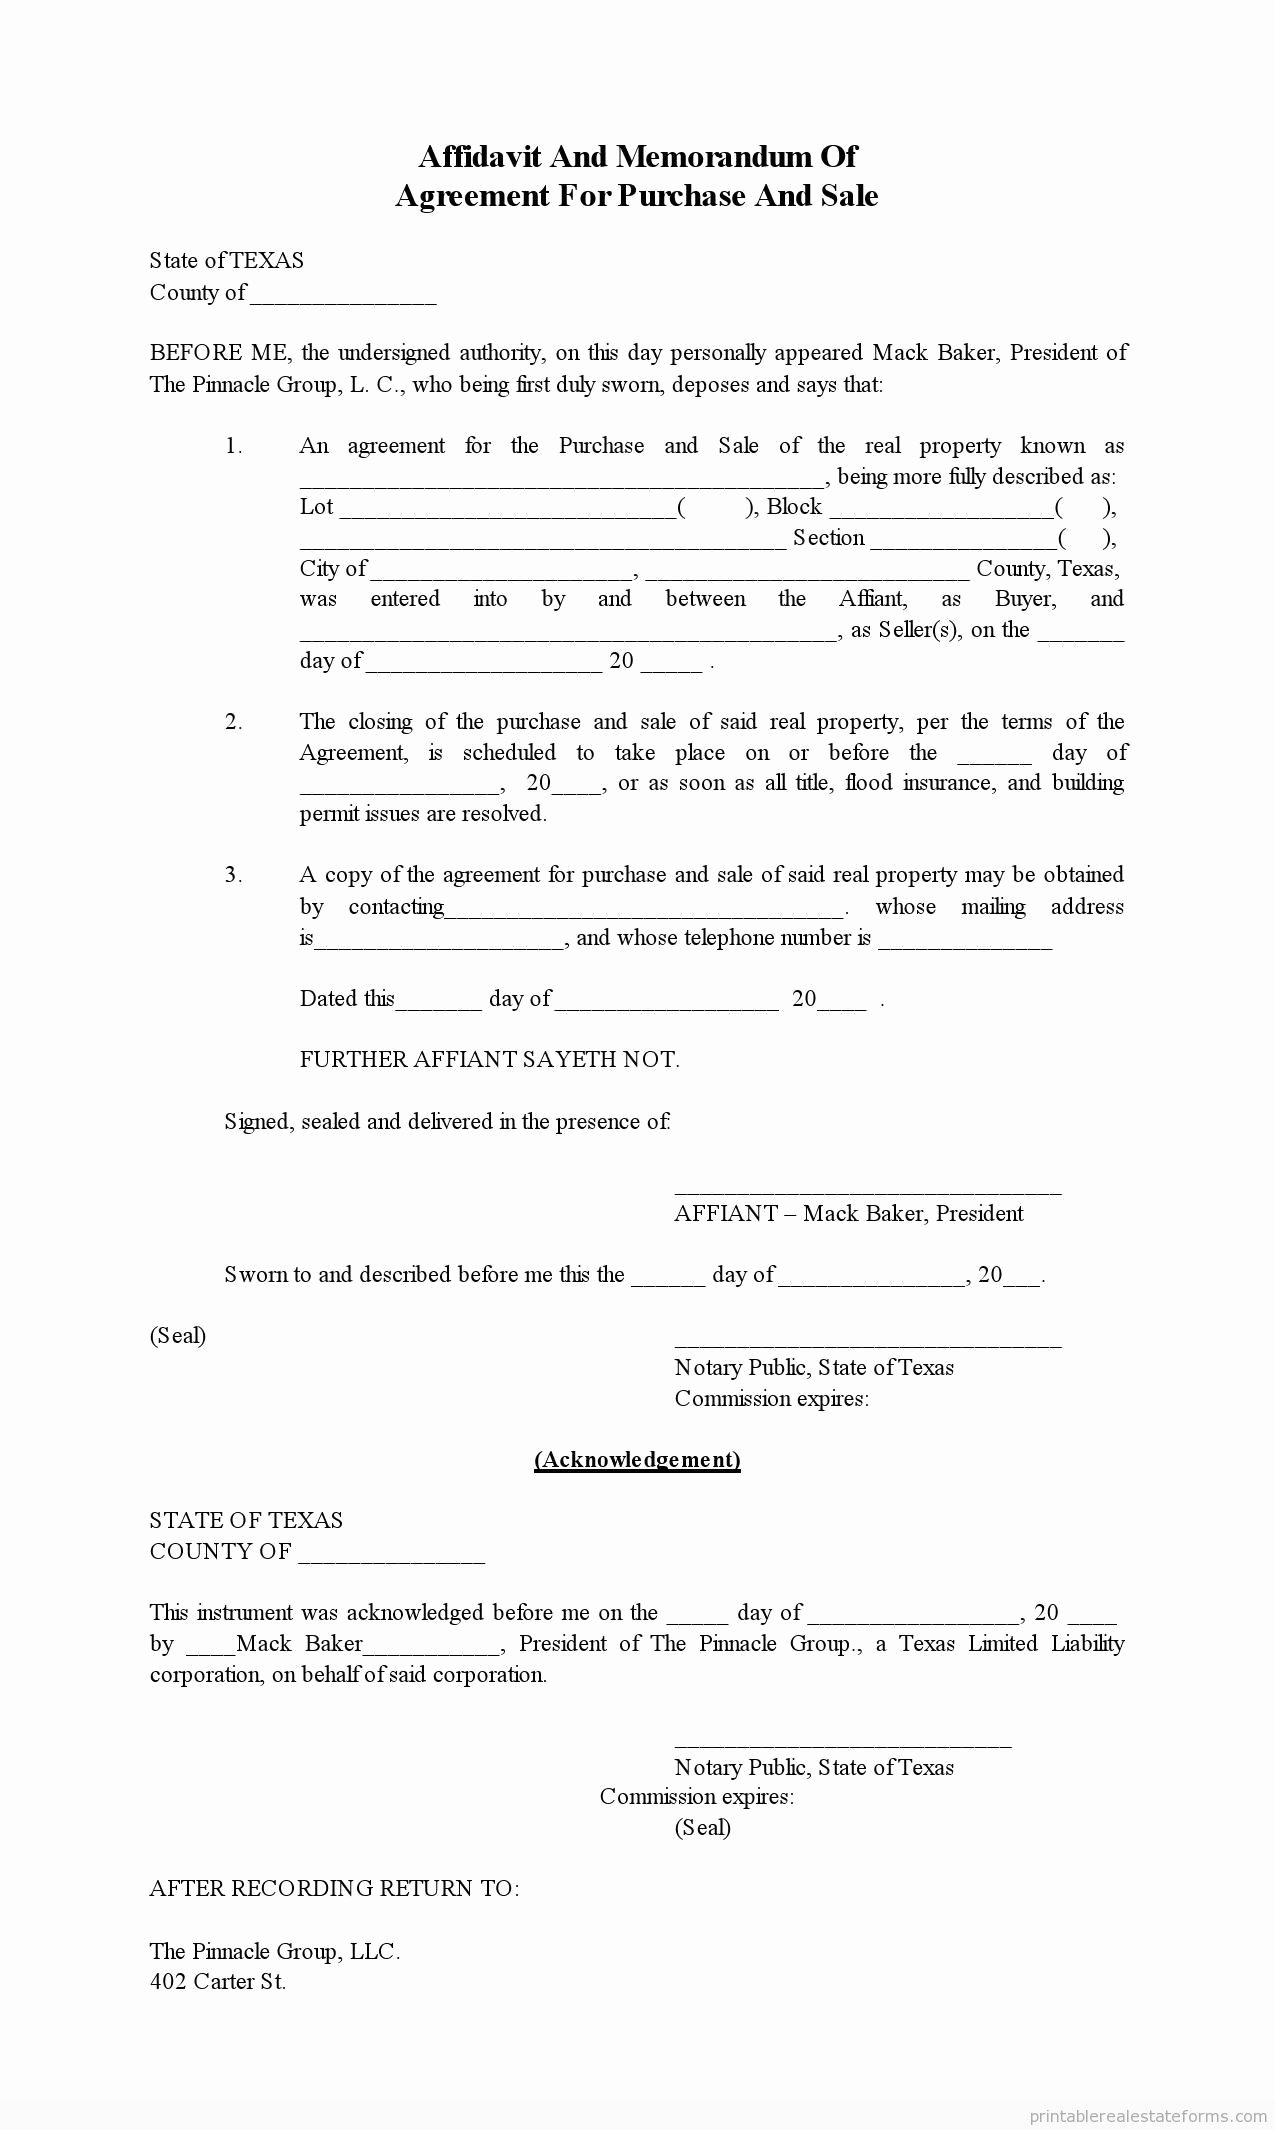 Memorandum Of Agreement Samples Lovely Sample Printable Affidavit Of Memorandum for Purchase and